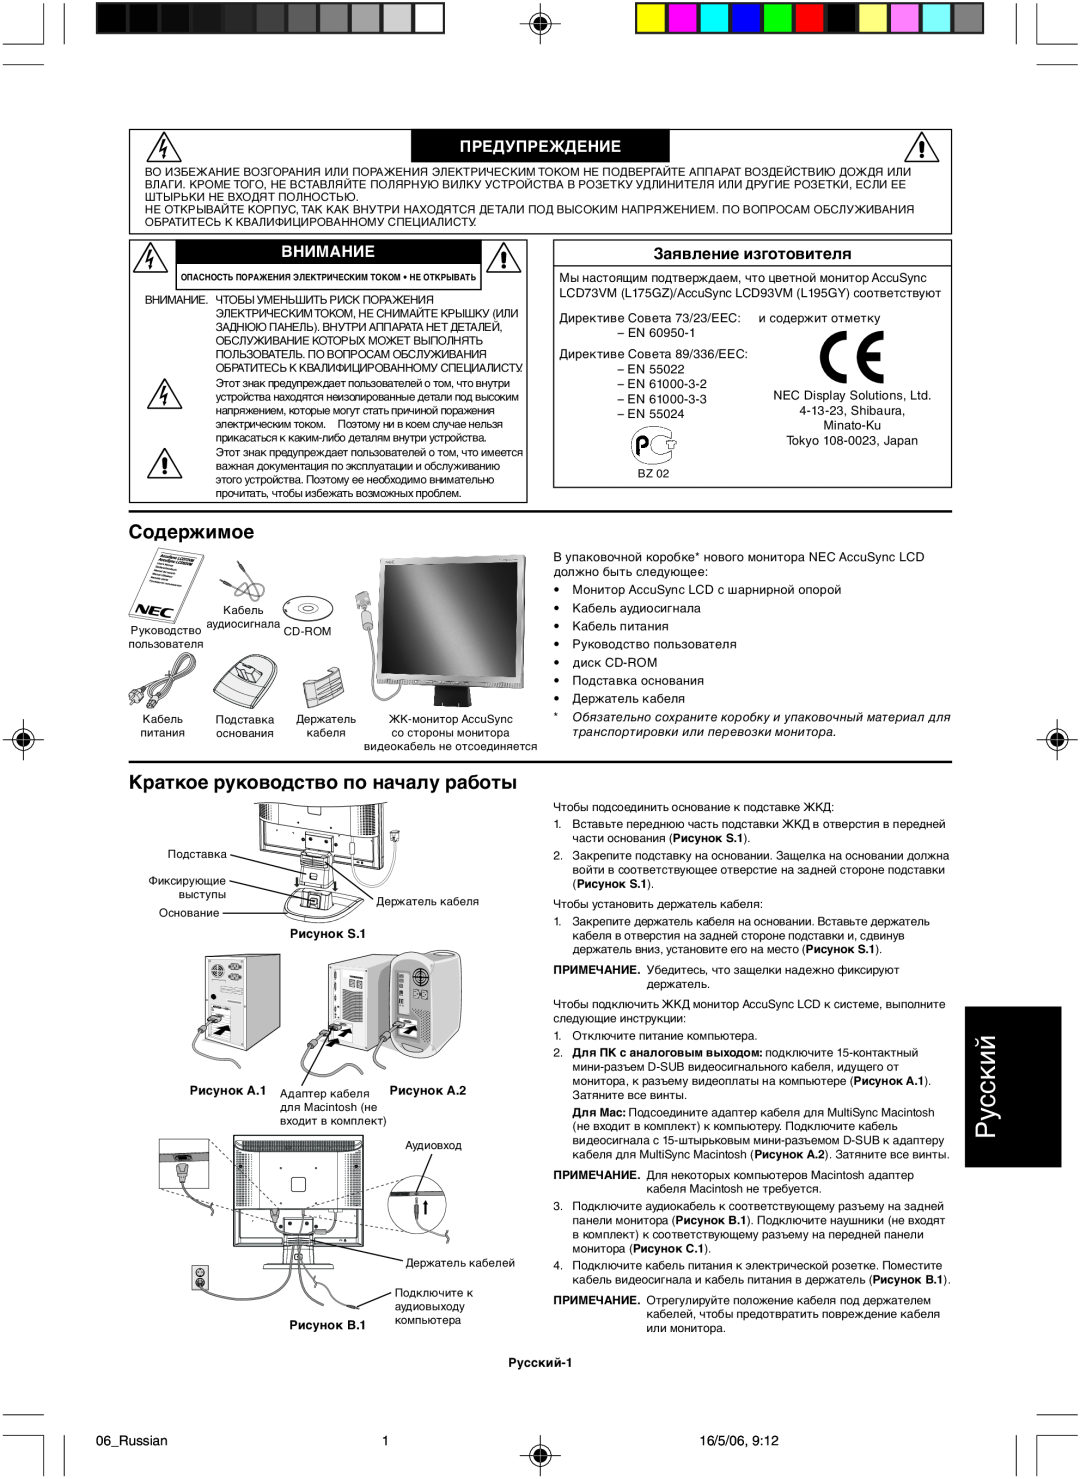 NEC LCD73VM user manual Русский, Содержимое, Краткое руководство по началу работы, Предупреждение, Внимание 